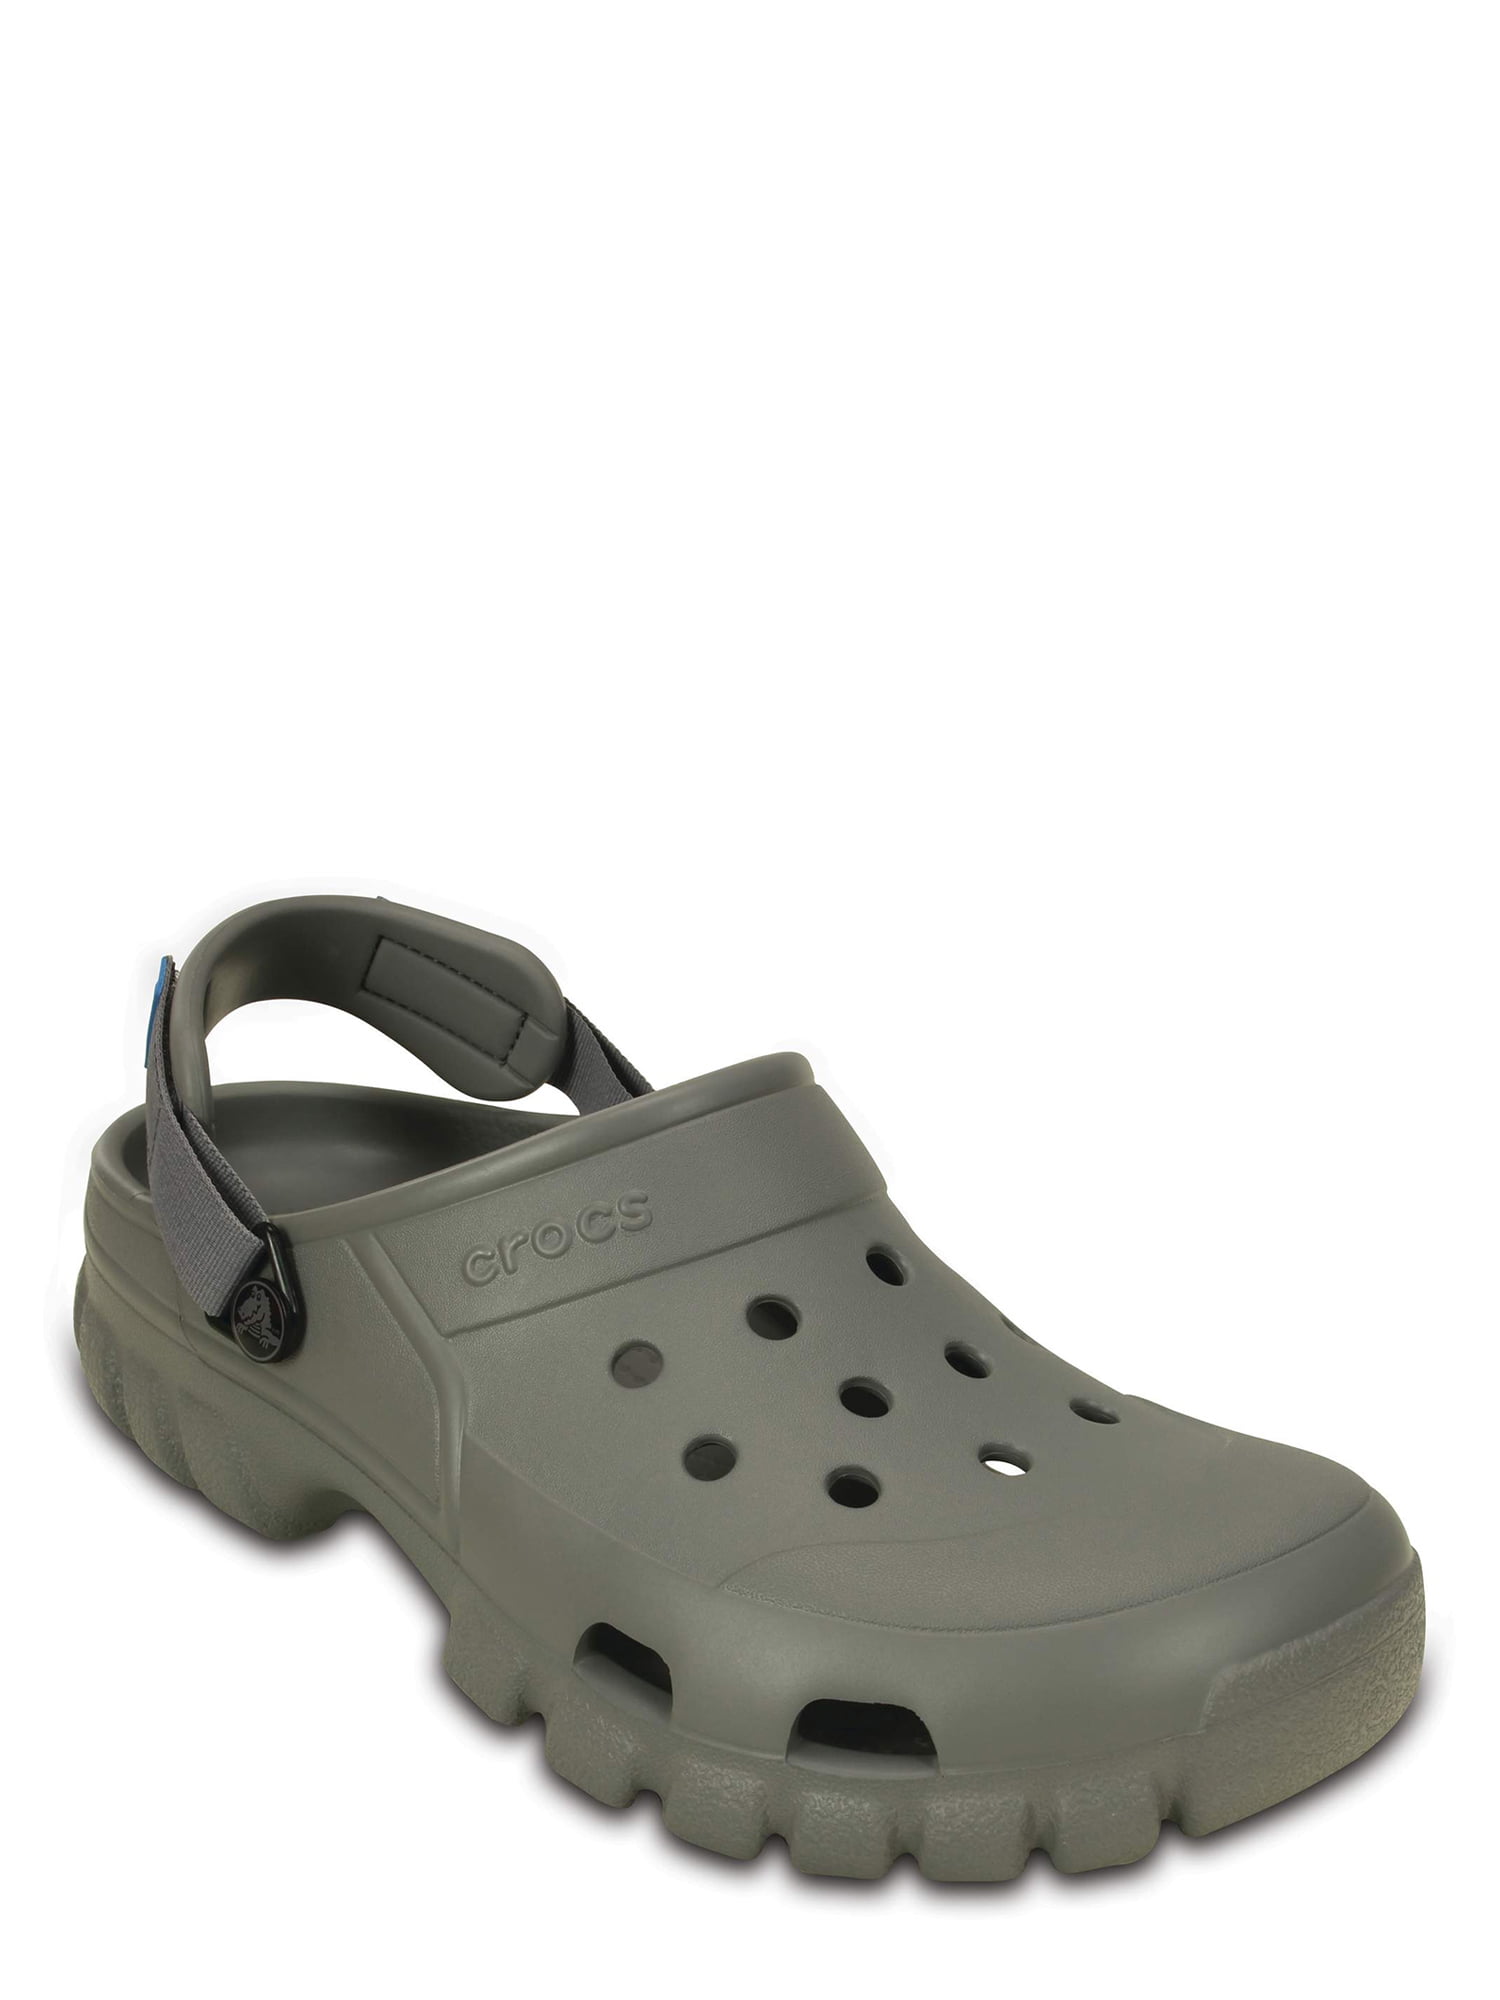 Crocs Offroad Sport Clogs Walmart.com